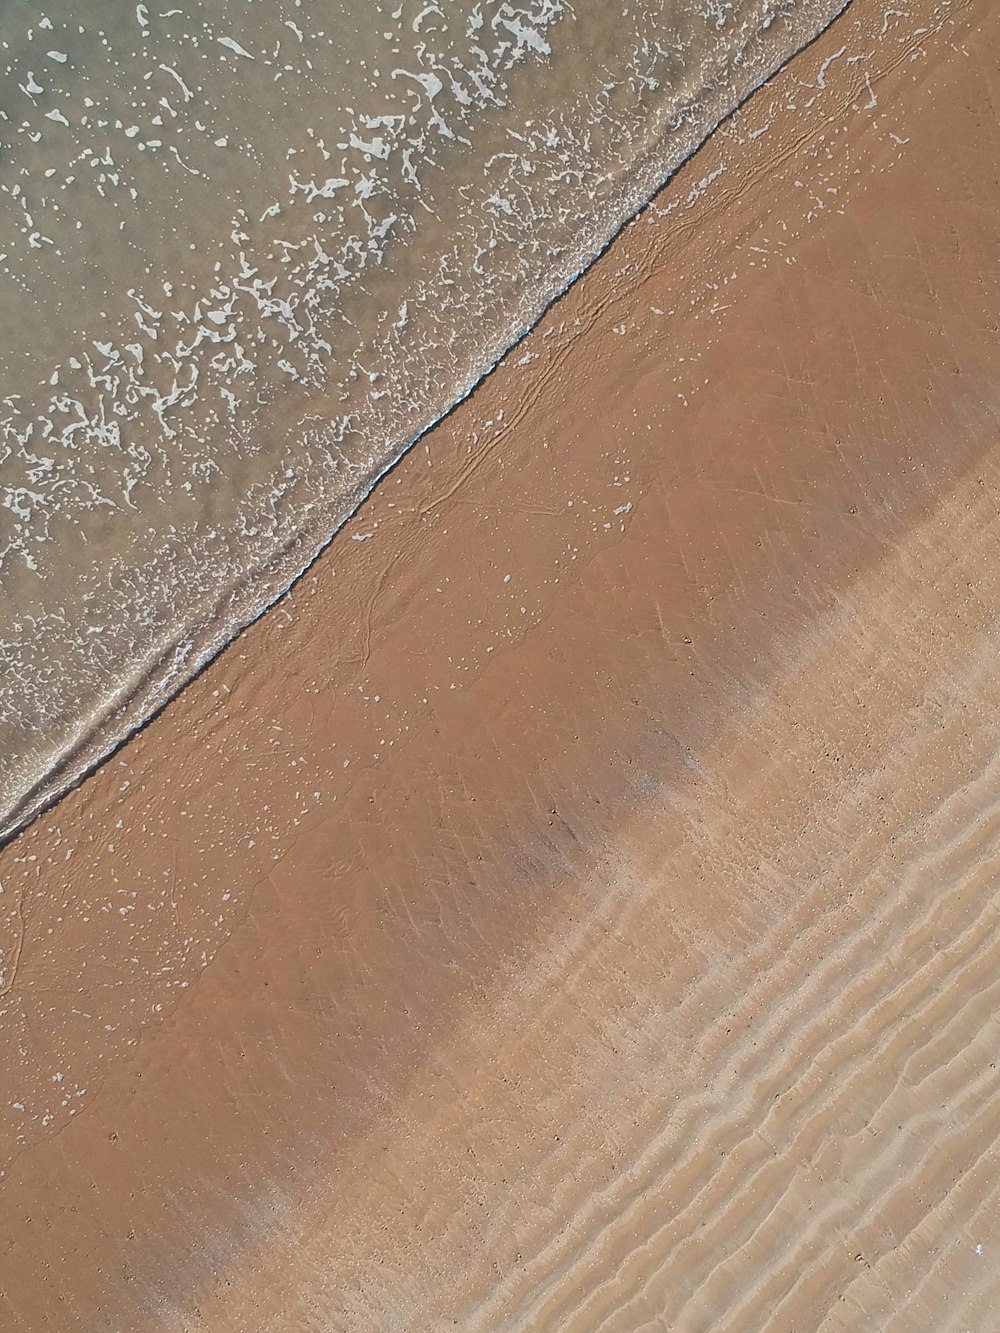 Photographie aérienne du bord de mer pendant la journée